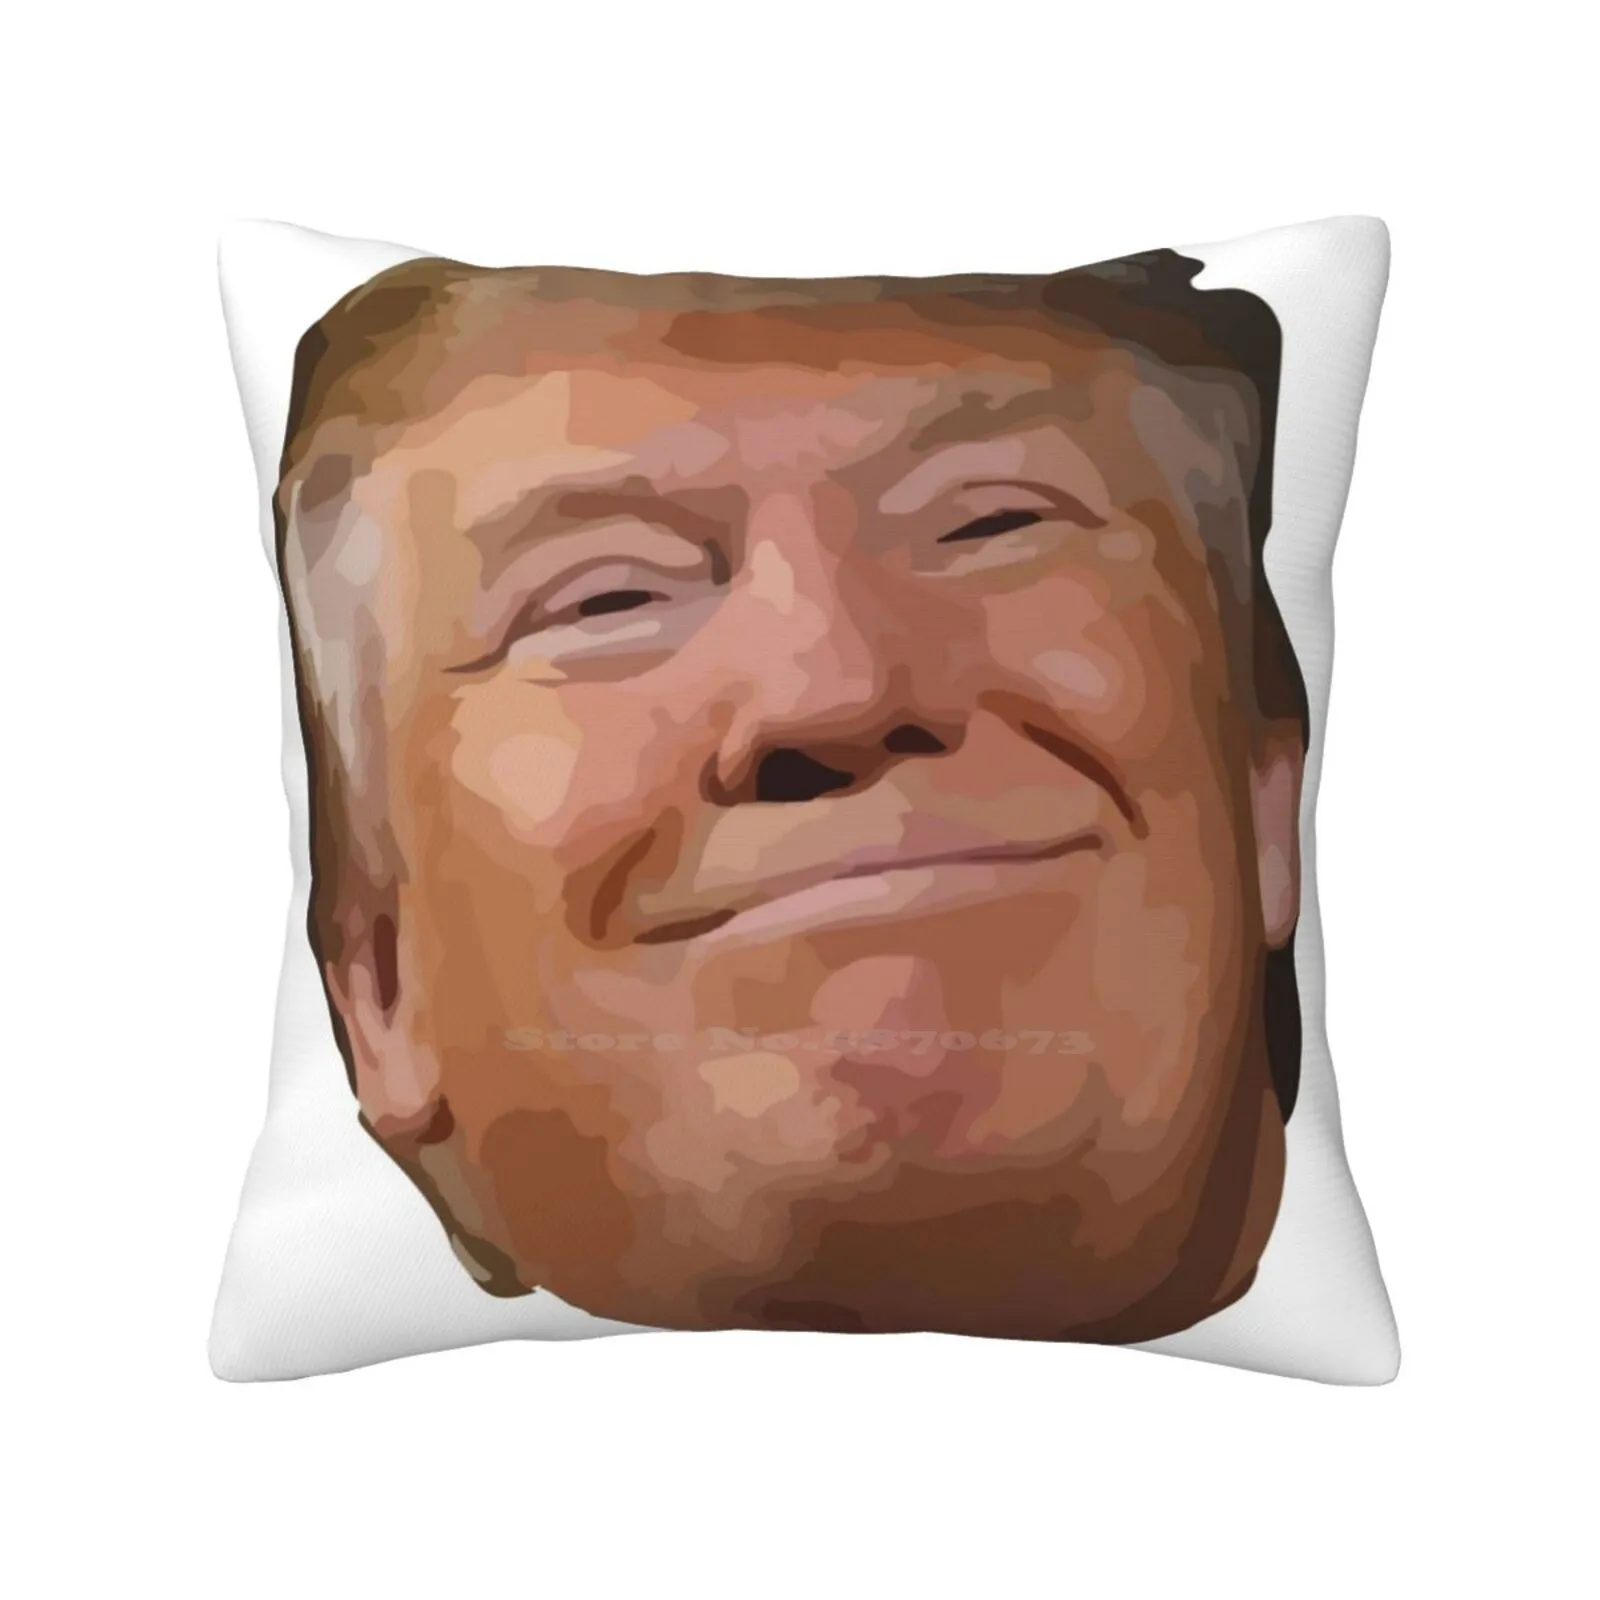 

Наволочка на диванную подушку с изображением Дональда Трампа